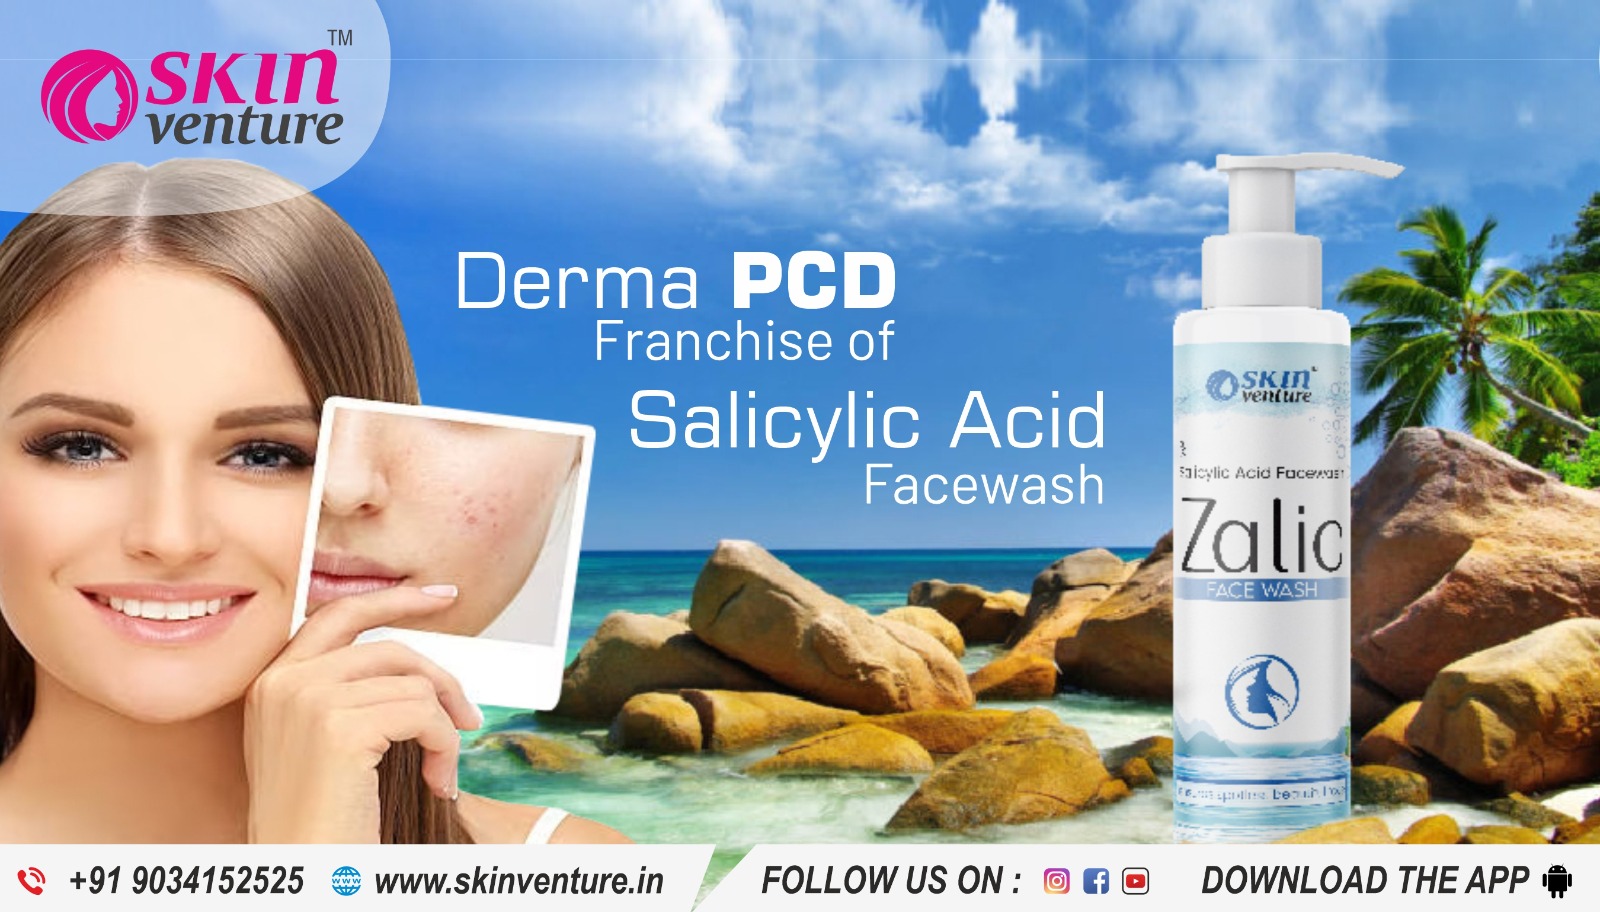 Derma PCD Franchise of Salicylic Acid Facewash: Skin Venture